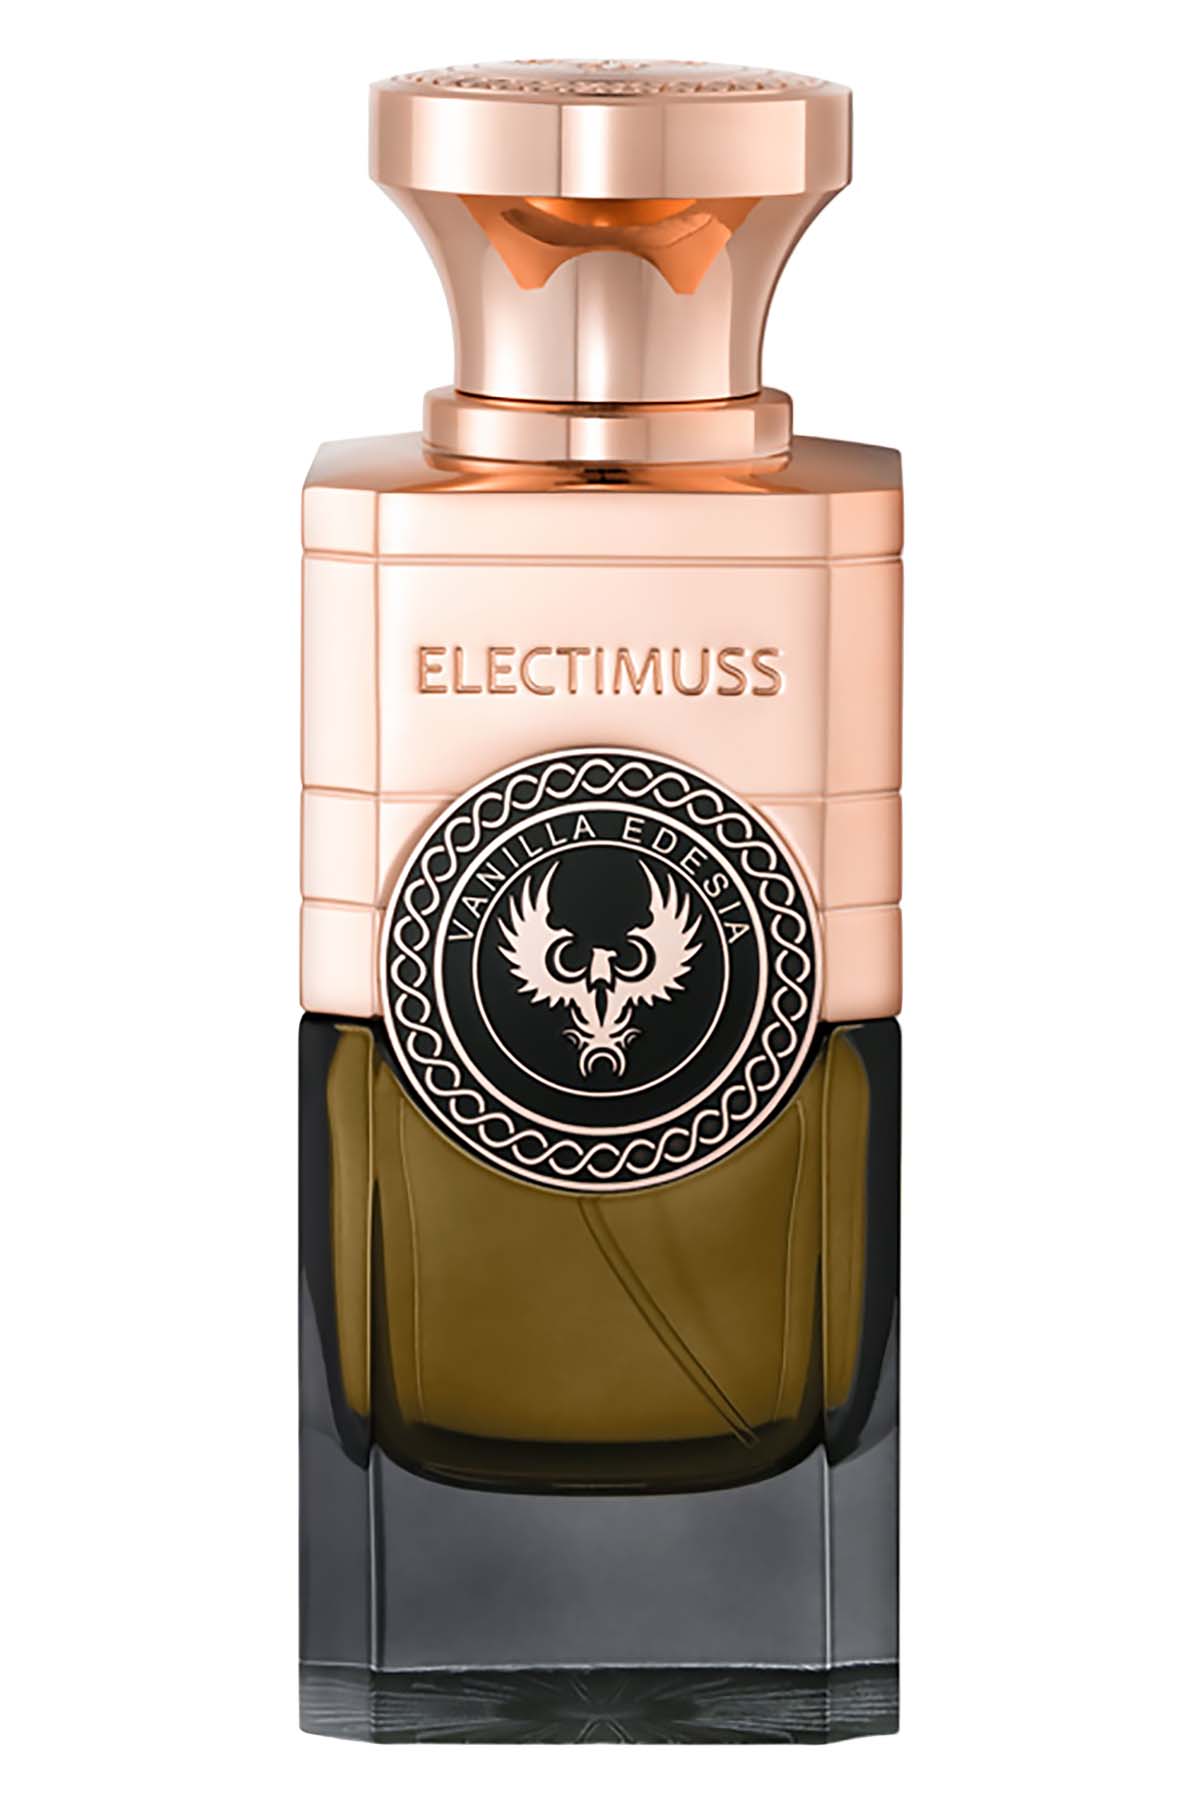 Electimuss Vanilla Edesia Extrait de Parfum 100ml